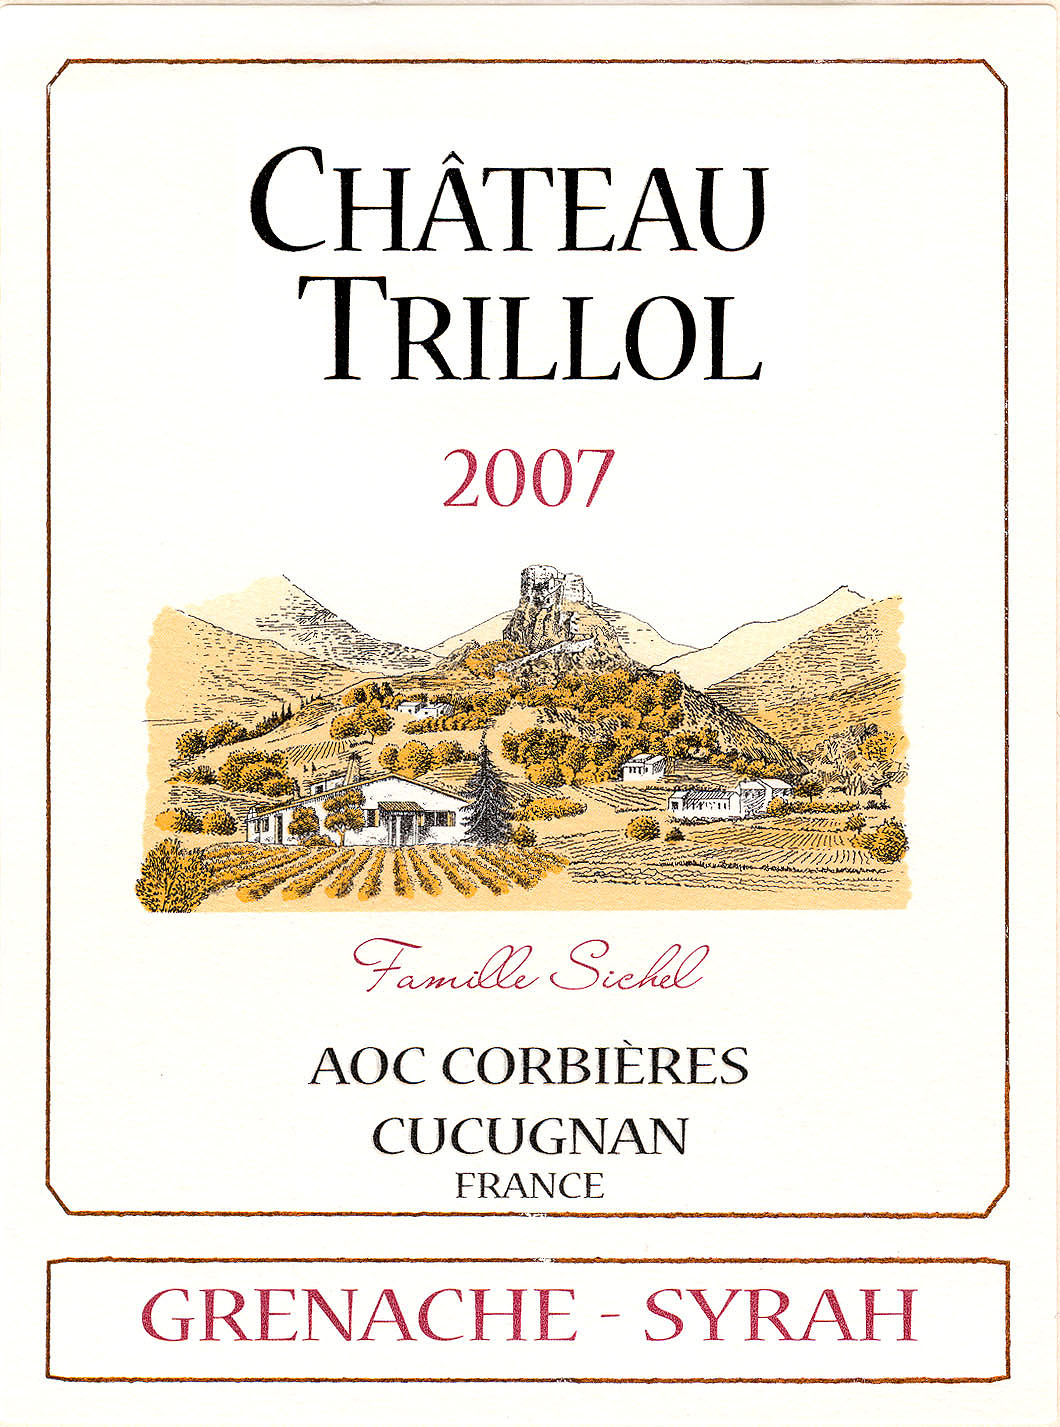 샤토 트리올(수출용)Château Trillol (export) AOC 코르비에르 Corbières 레드 Red 2007